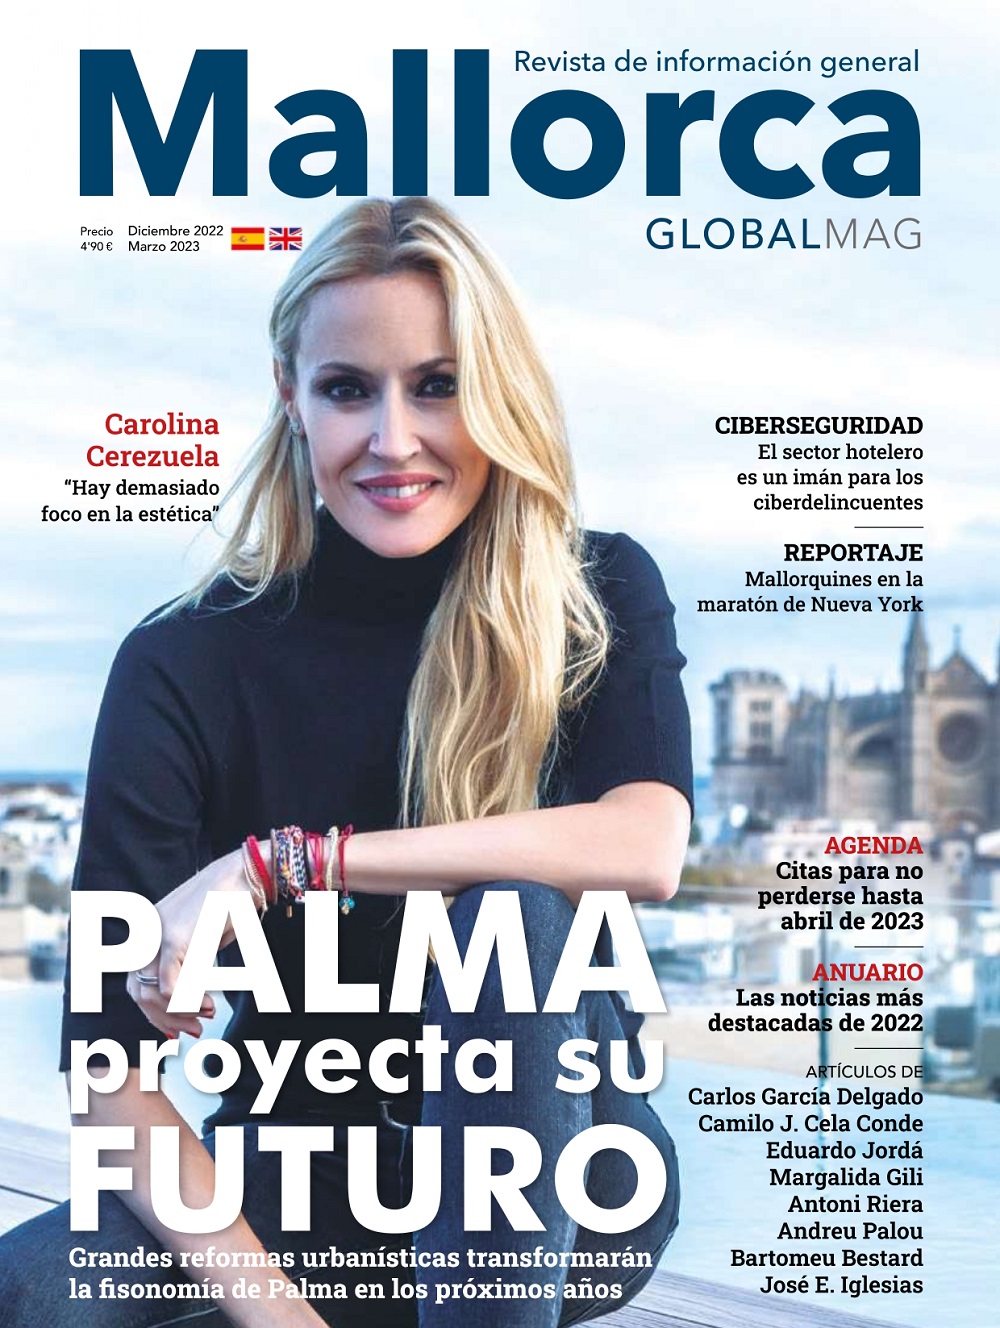 Mallorca Global Mag edición invierno 2022 - 2023